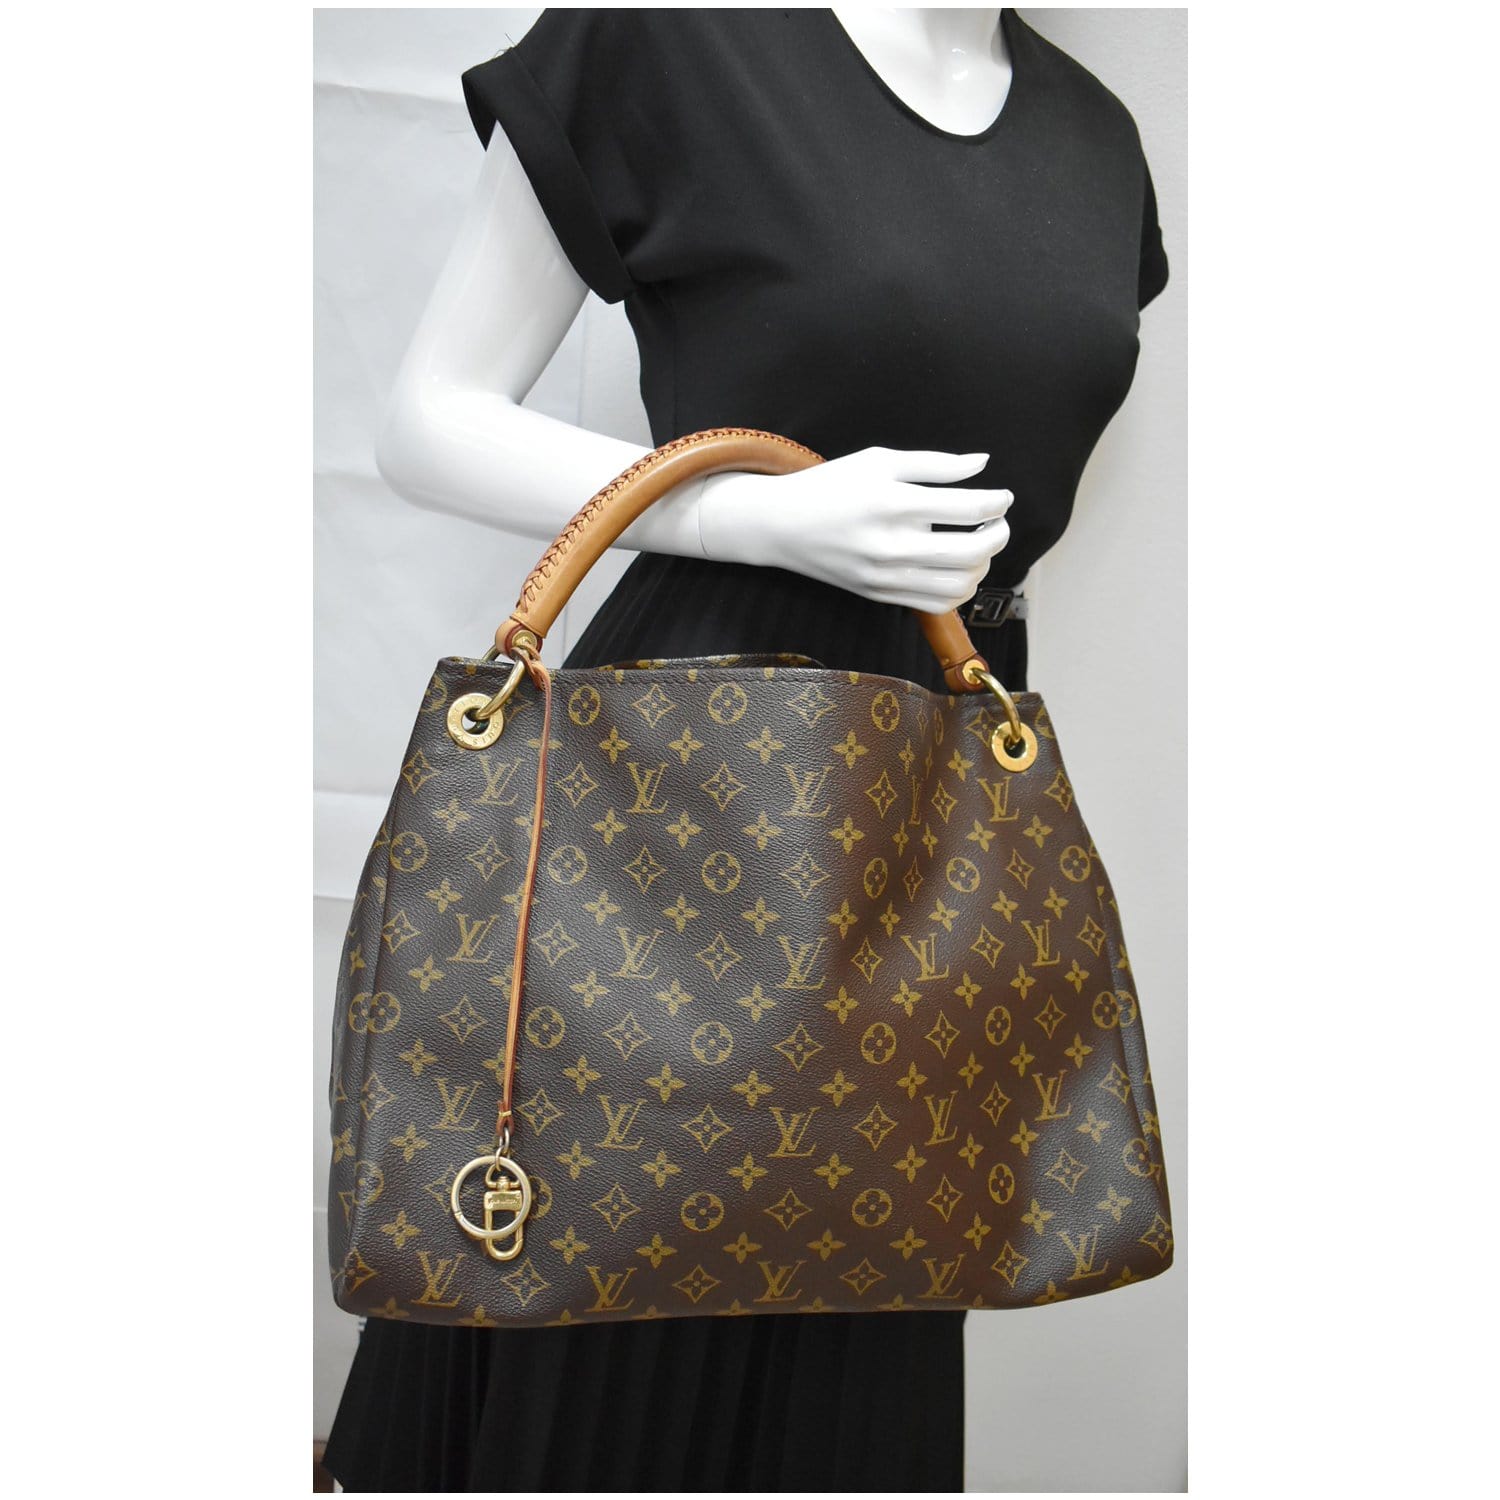 Louis Vuitton Artsy MM Monogram Canvas Tote Handbag